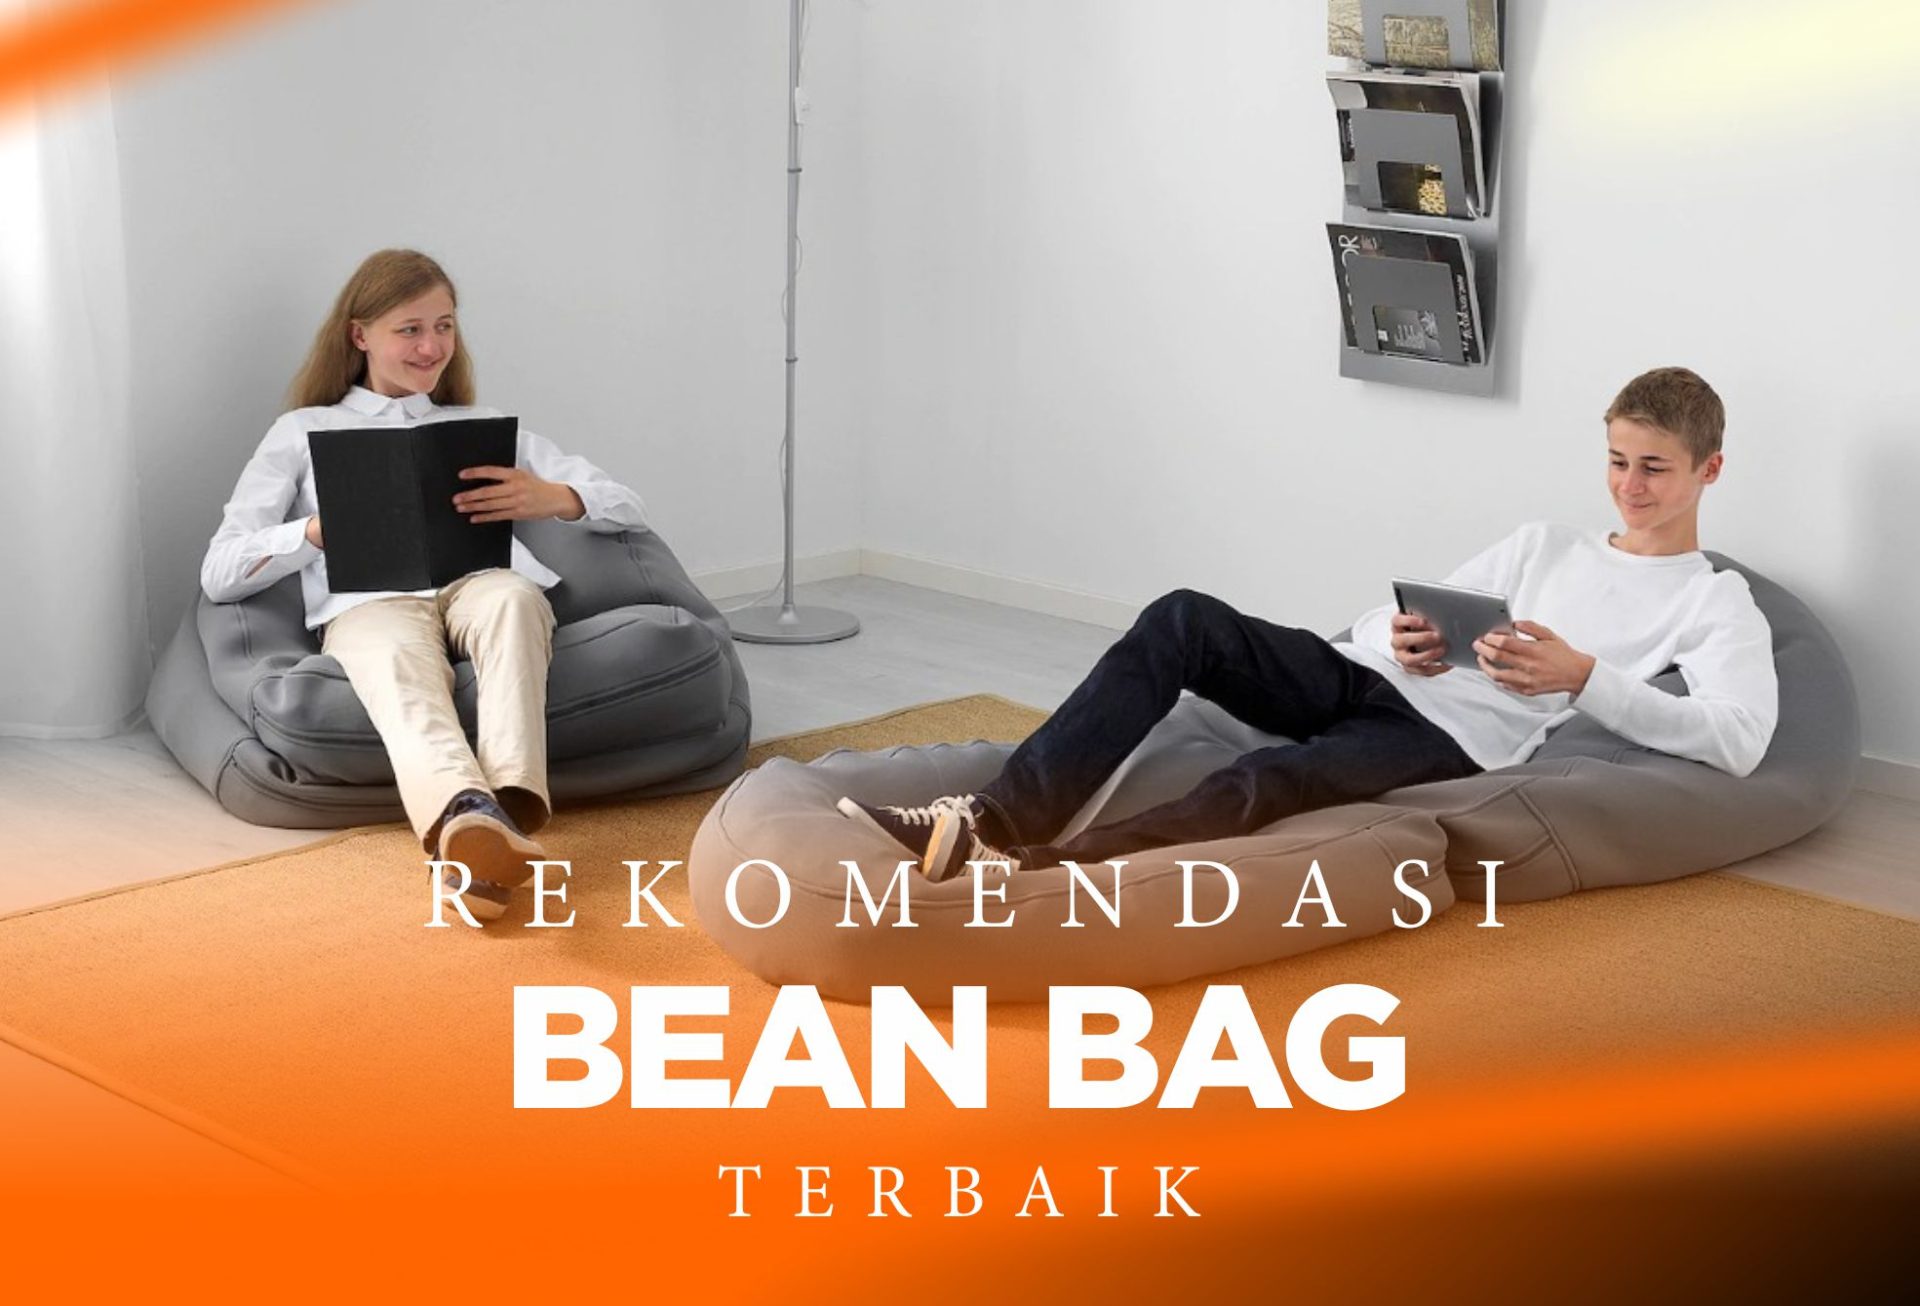 10 Rekomendasi Bean Bag Terbaik, Desain Unik !